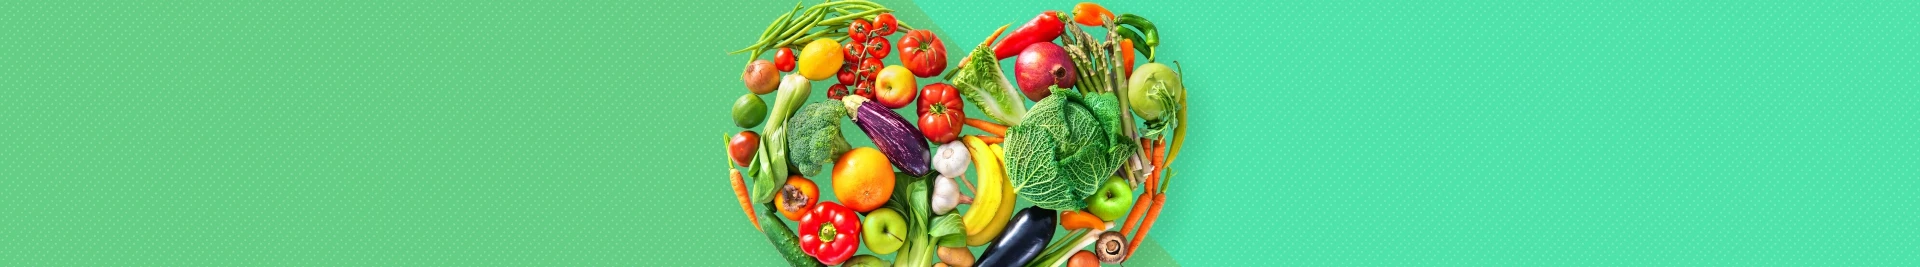 Serce z warzyw i owoców